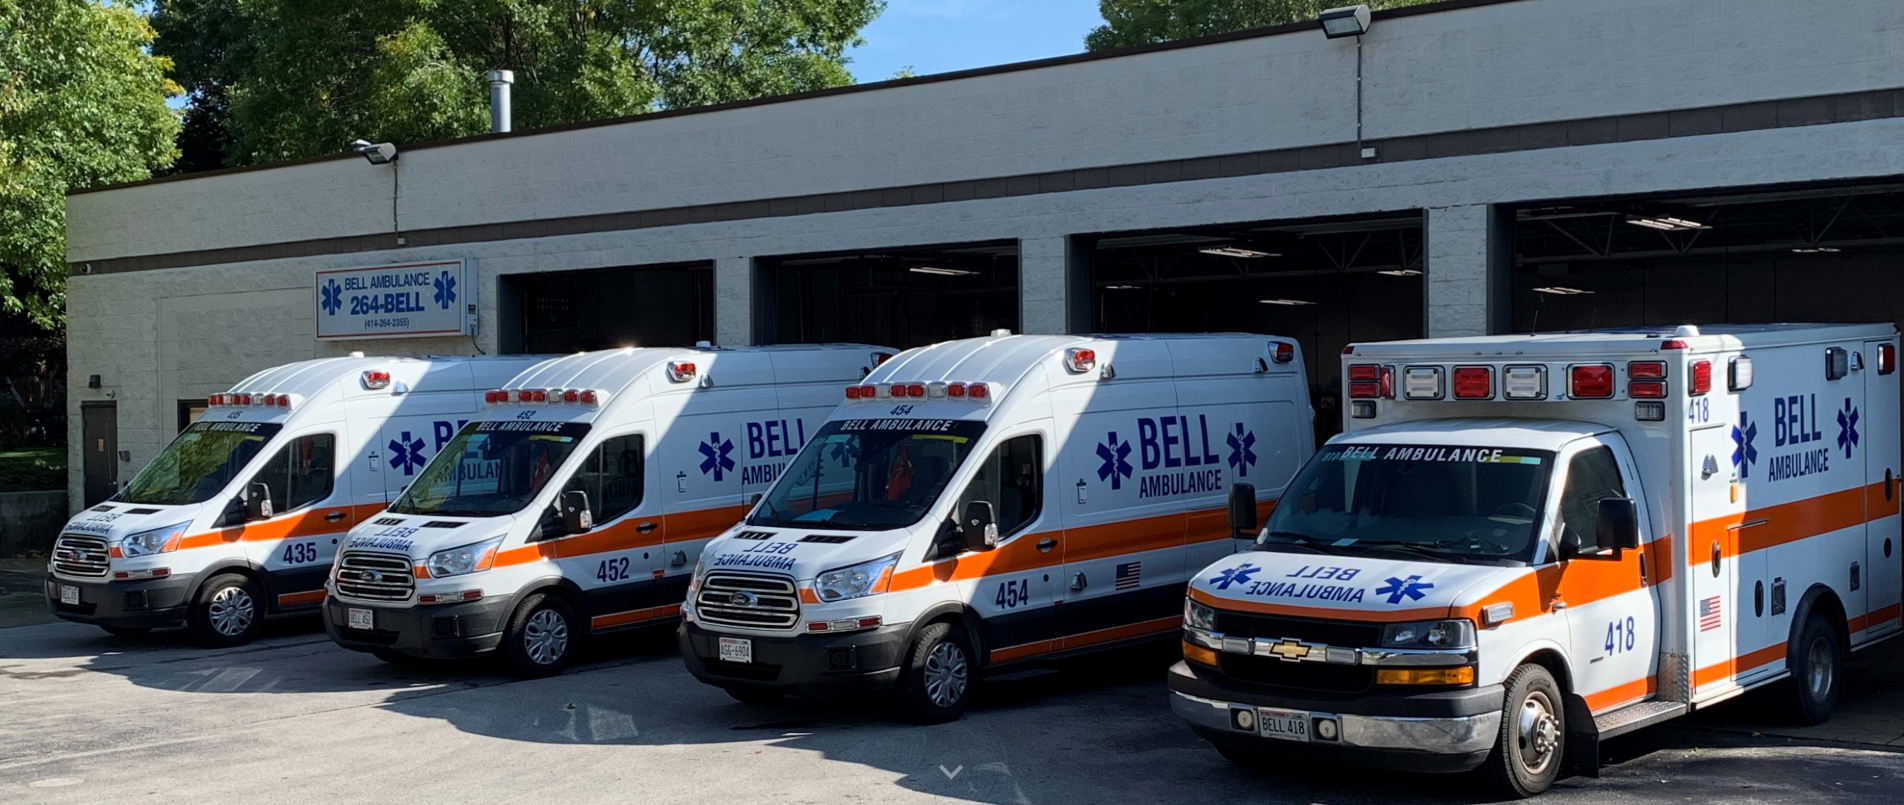 Bell Ambulance